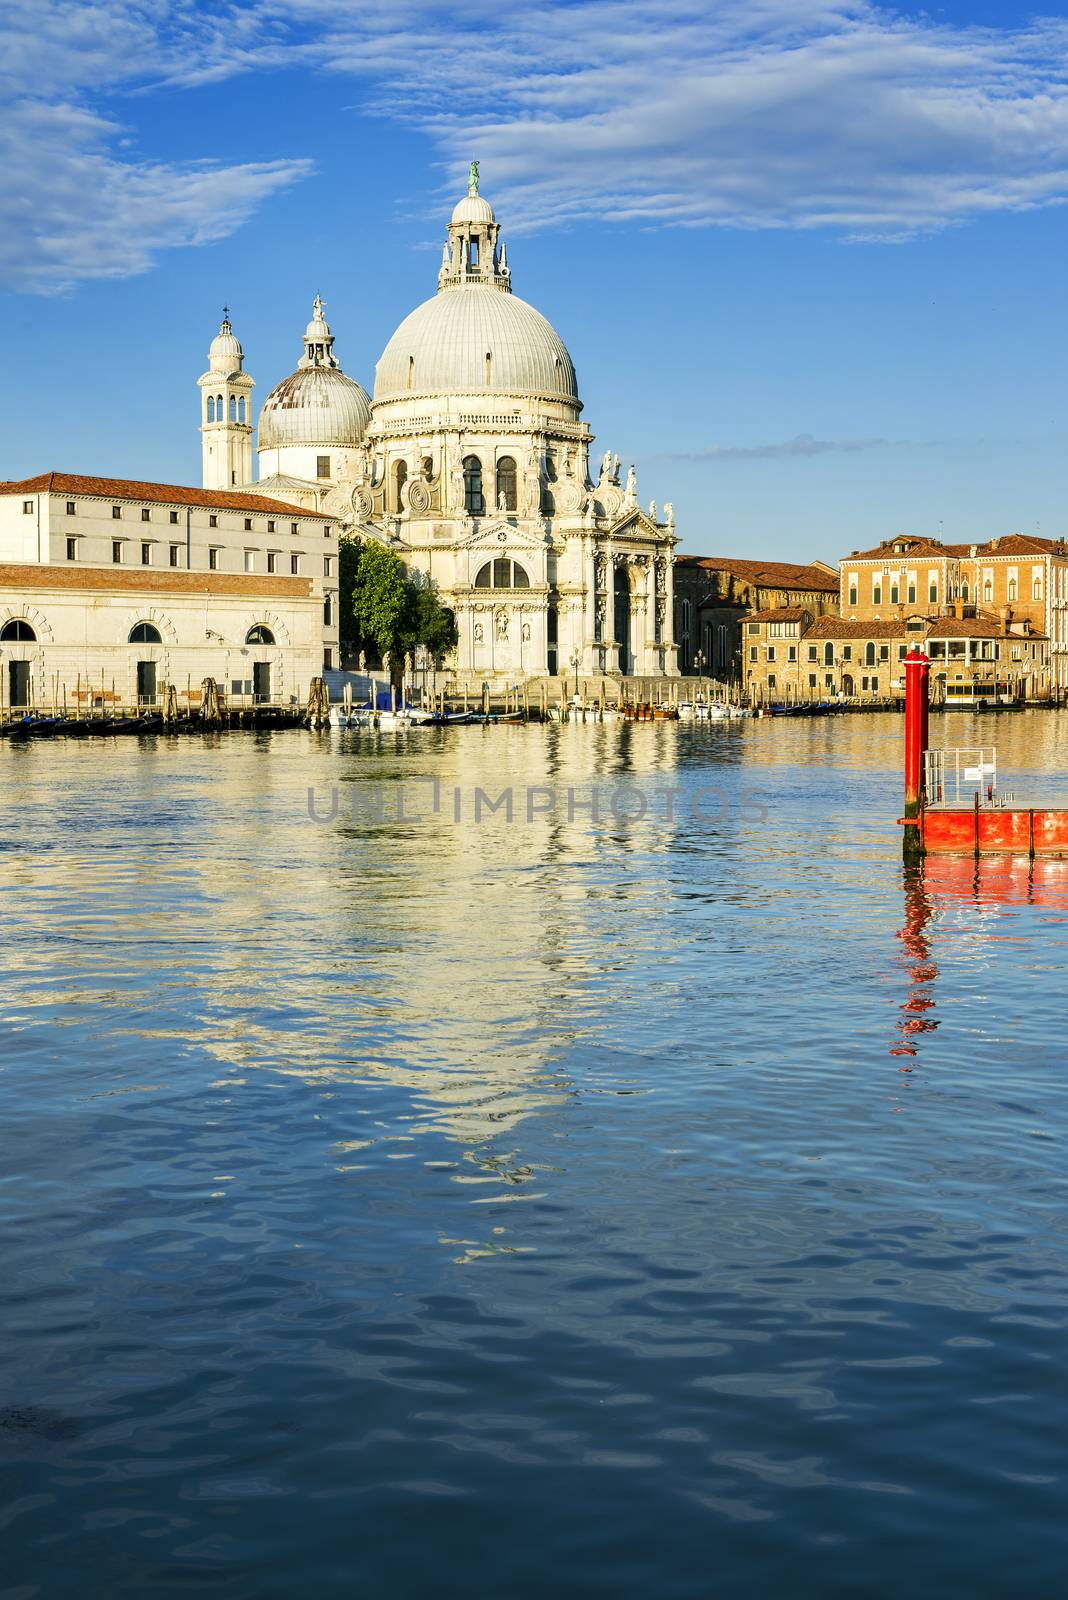 Gondola on Canal Grande with Basilica di Santa Maria della Salute in the background, Venice, Italy 